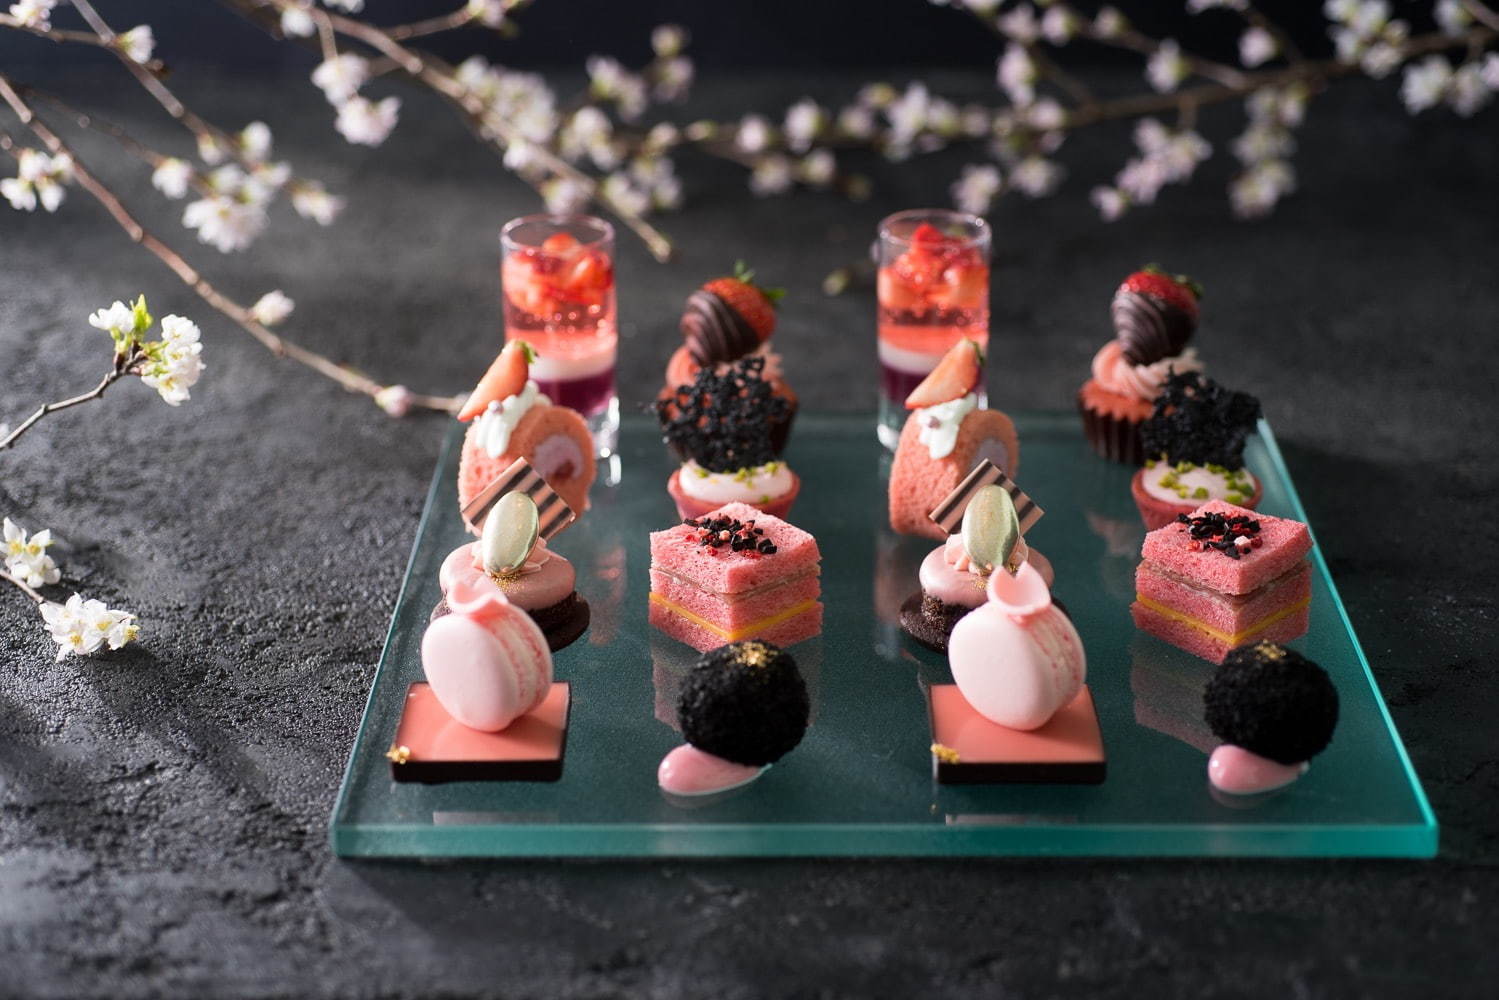 コンラッド東京の“桜×いちご”アフタヌーンティー、“花びら”を飾った春色マカロンや桜のジュレ